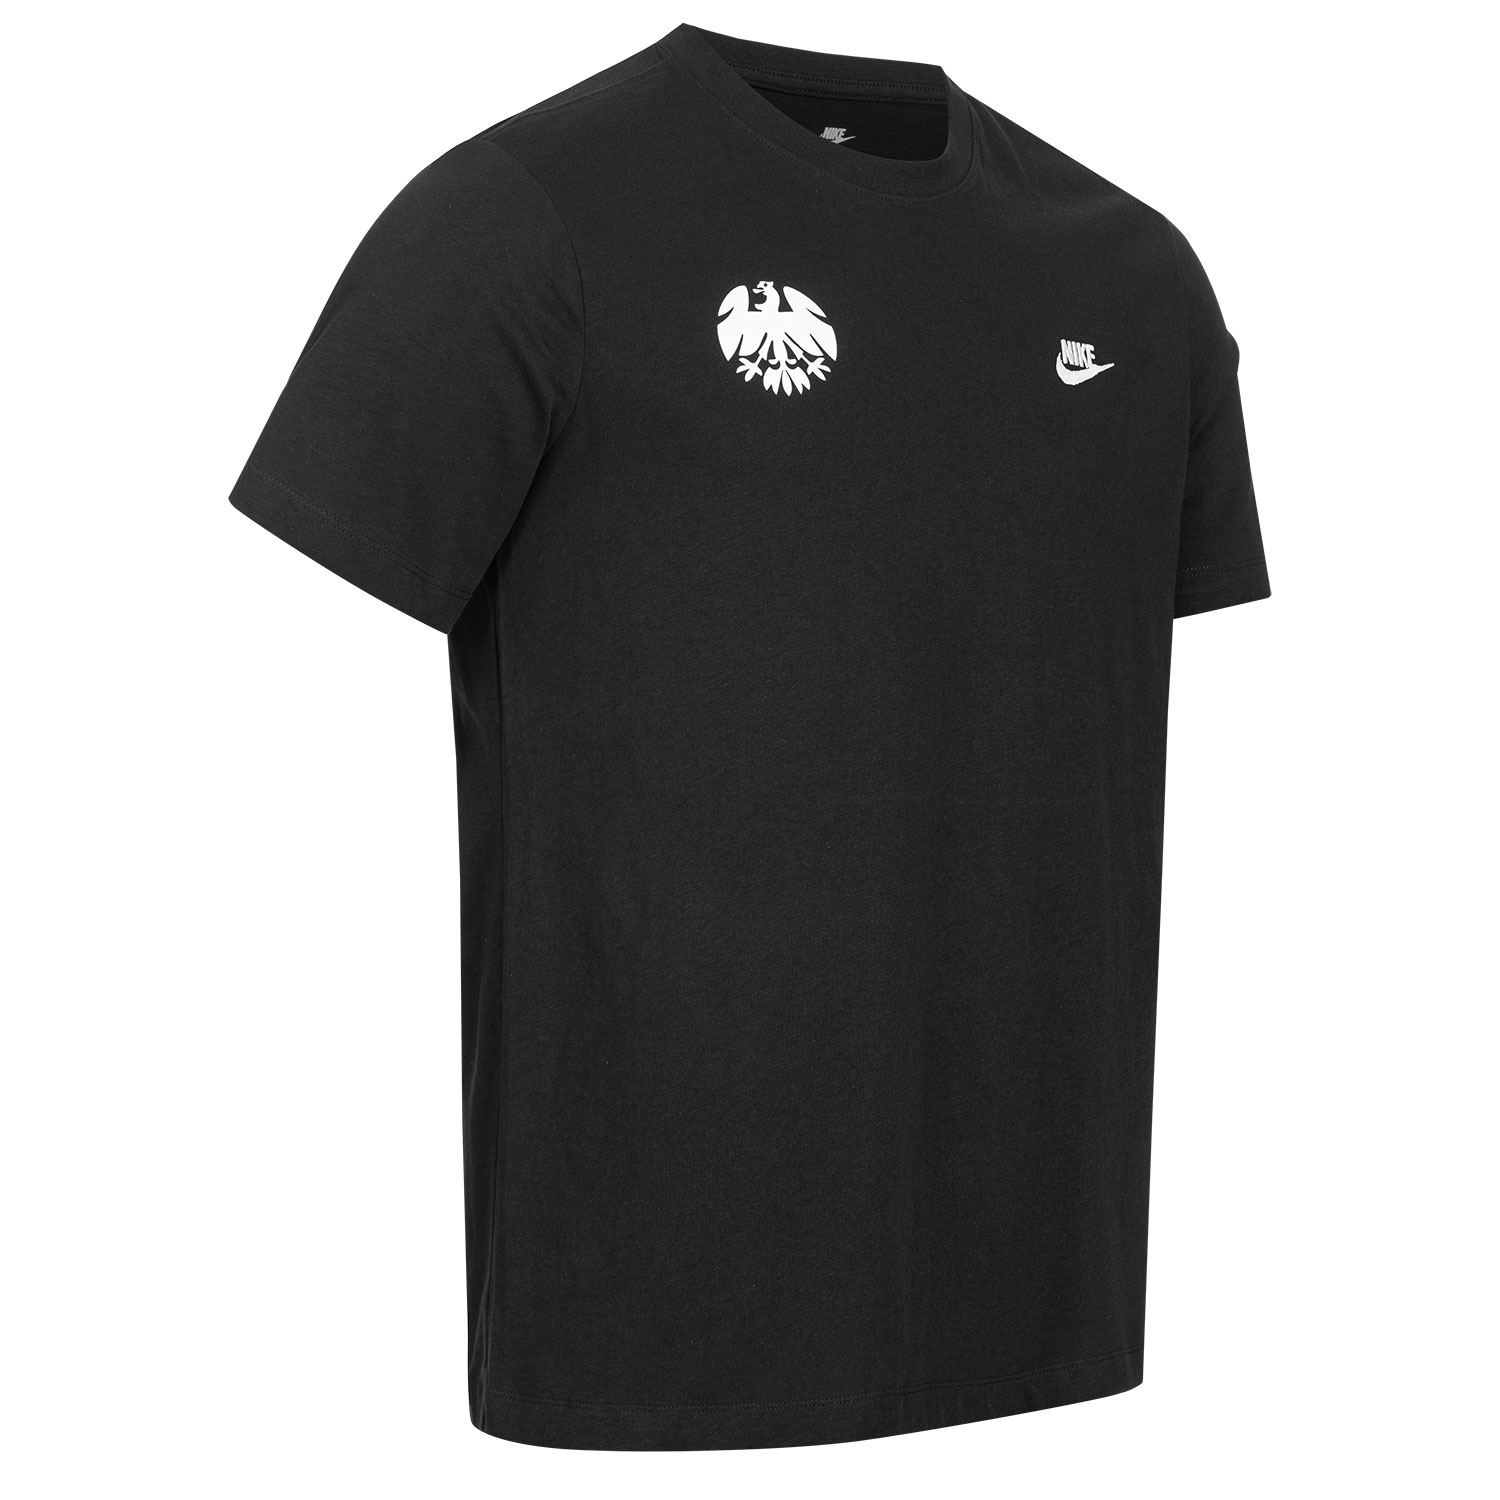 Bild 4: Nike T-Shirt New Eighties black